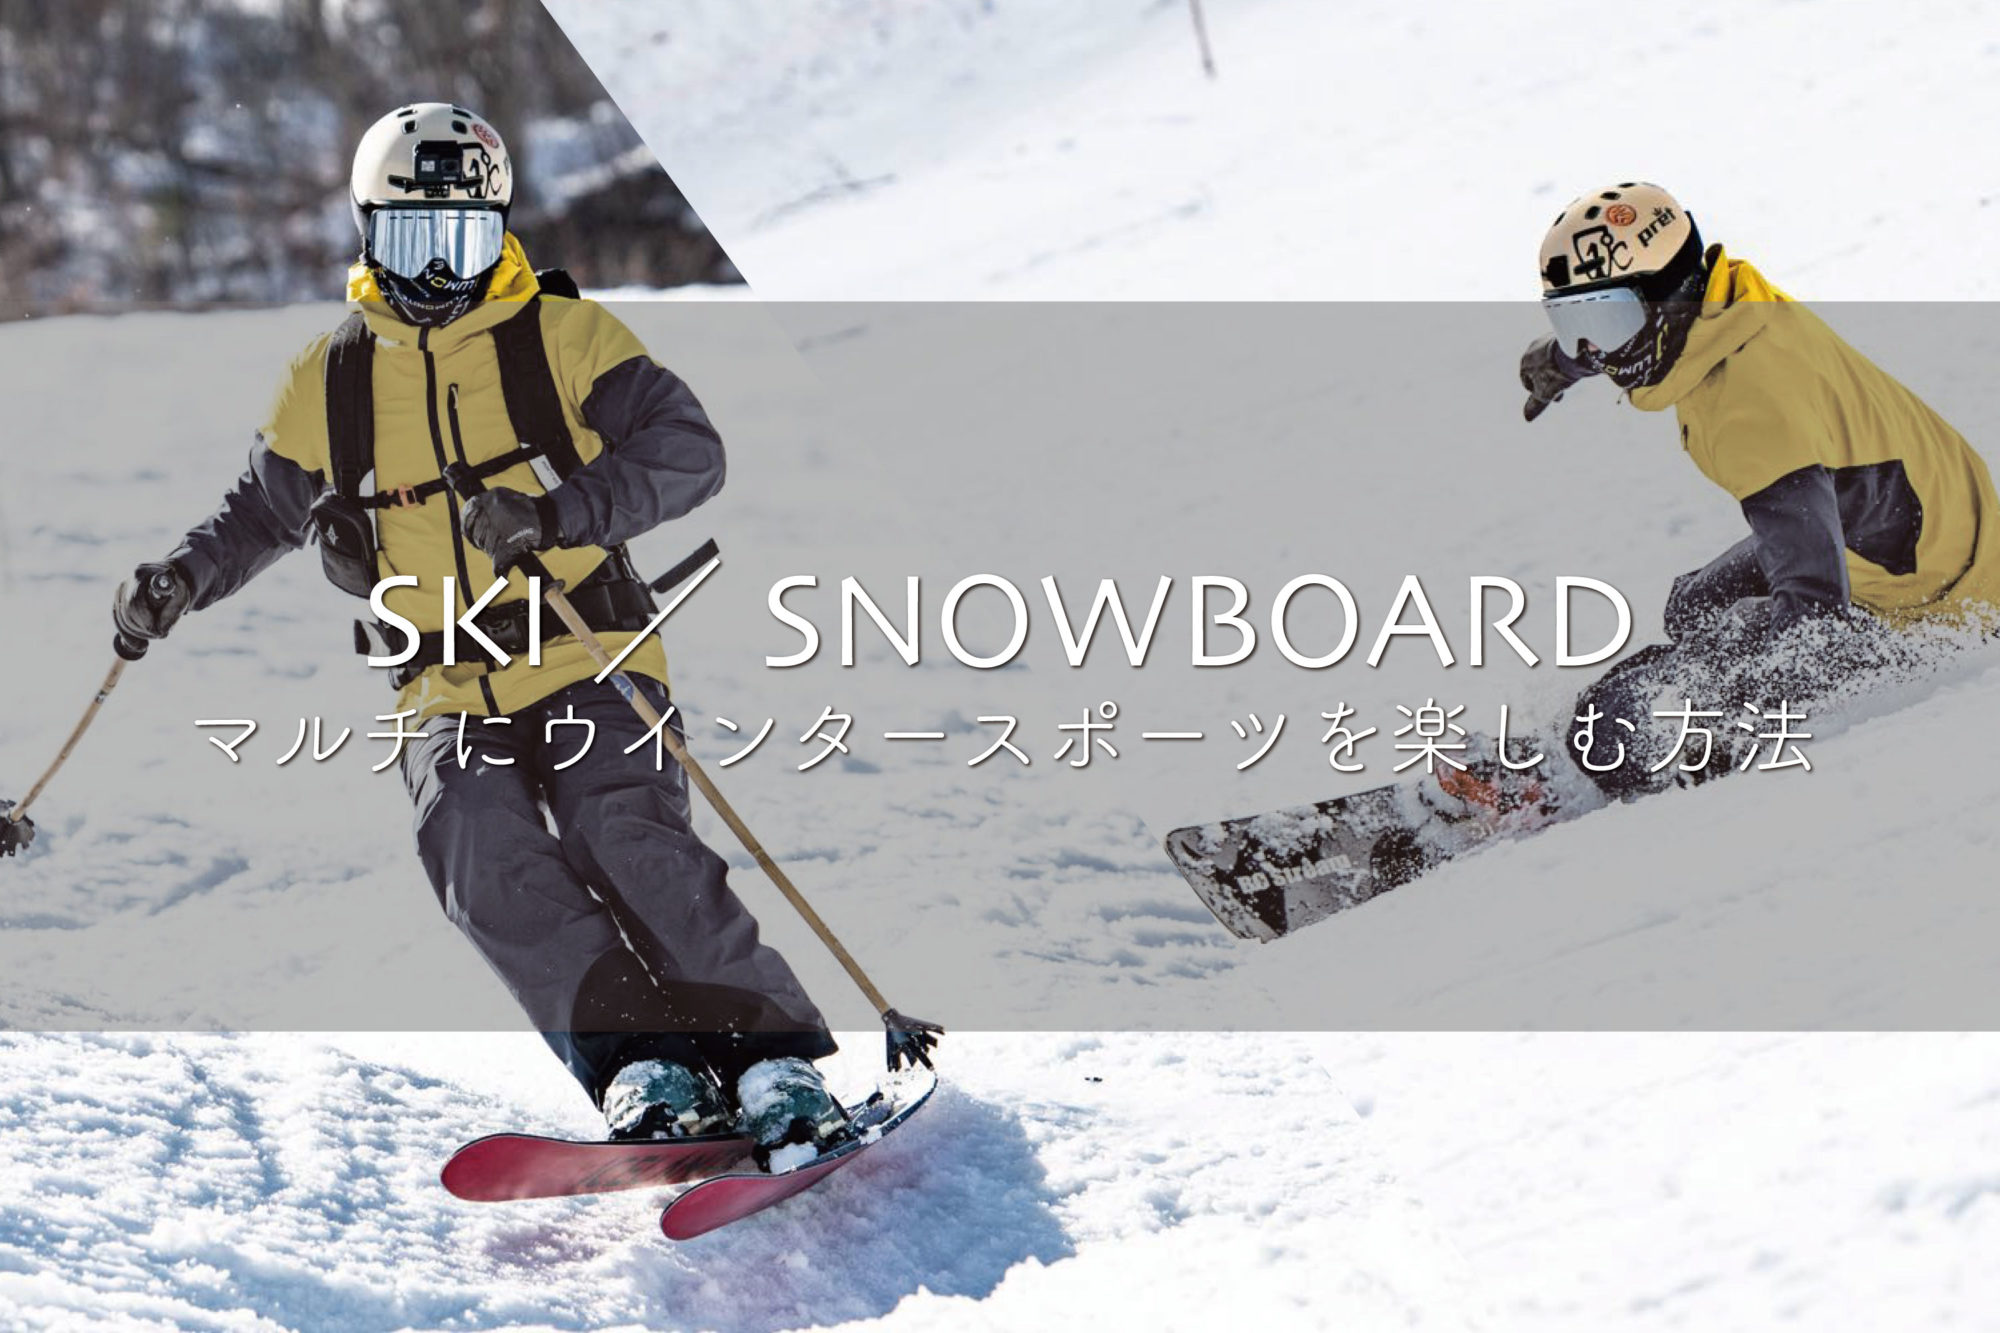 スキー スノーボード限らずマルチにウインタースポーツを楽しむ方法